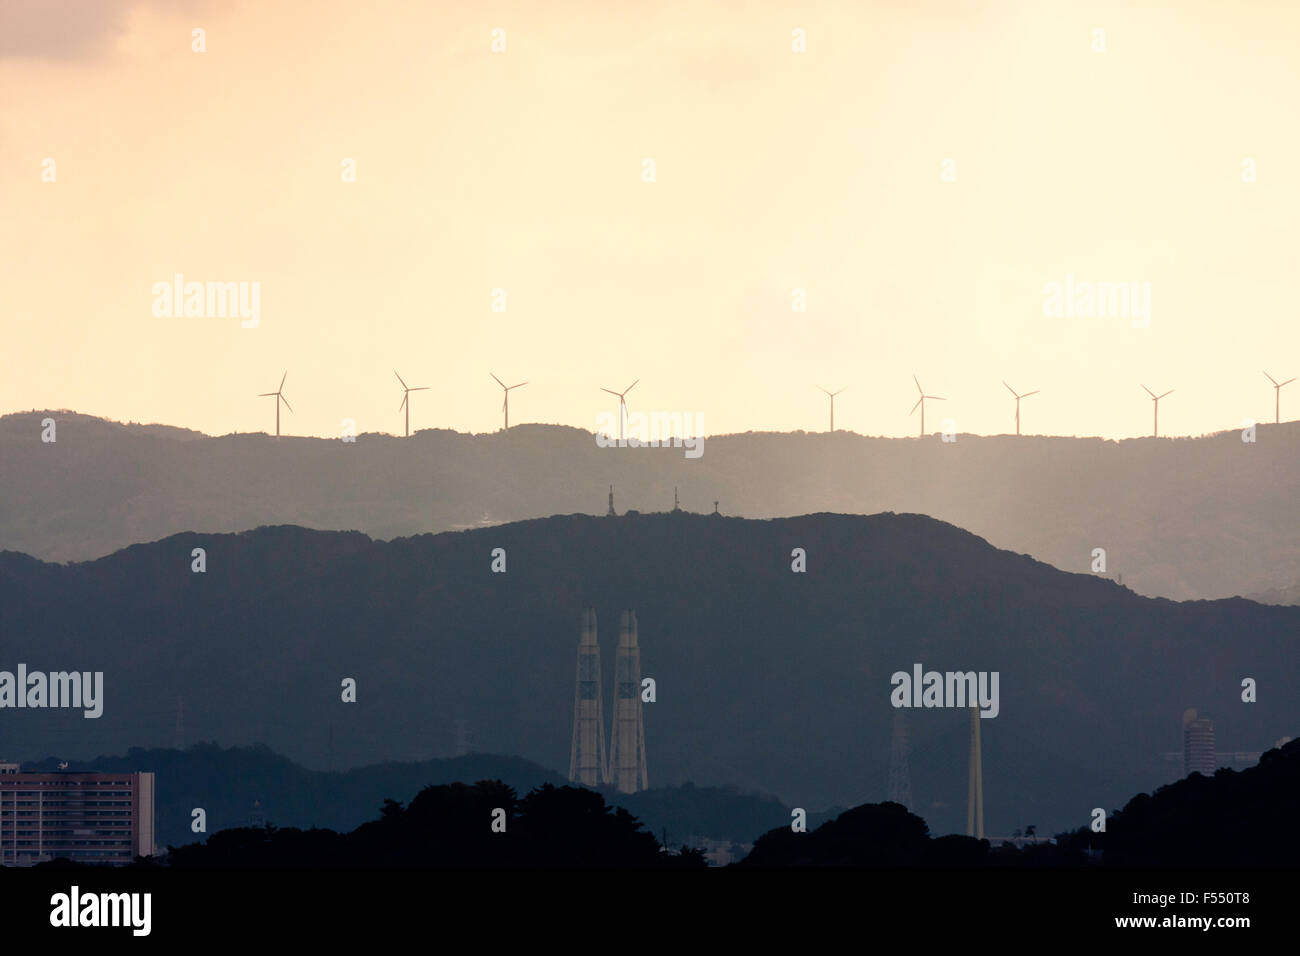 Wakayama, Japan, silhouetted Windenergieanlagen auf die Berge in der Ferne mit verschiedenen Industrieschornsteinen im Vordergrund. Regen, Sturm, aber einige Sonnenlicht. Stockfoto